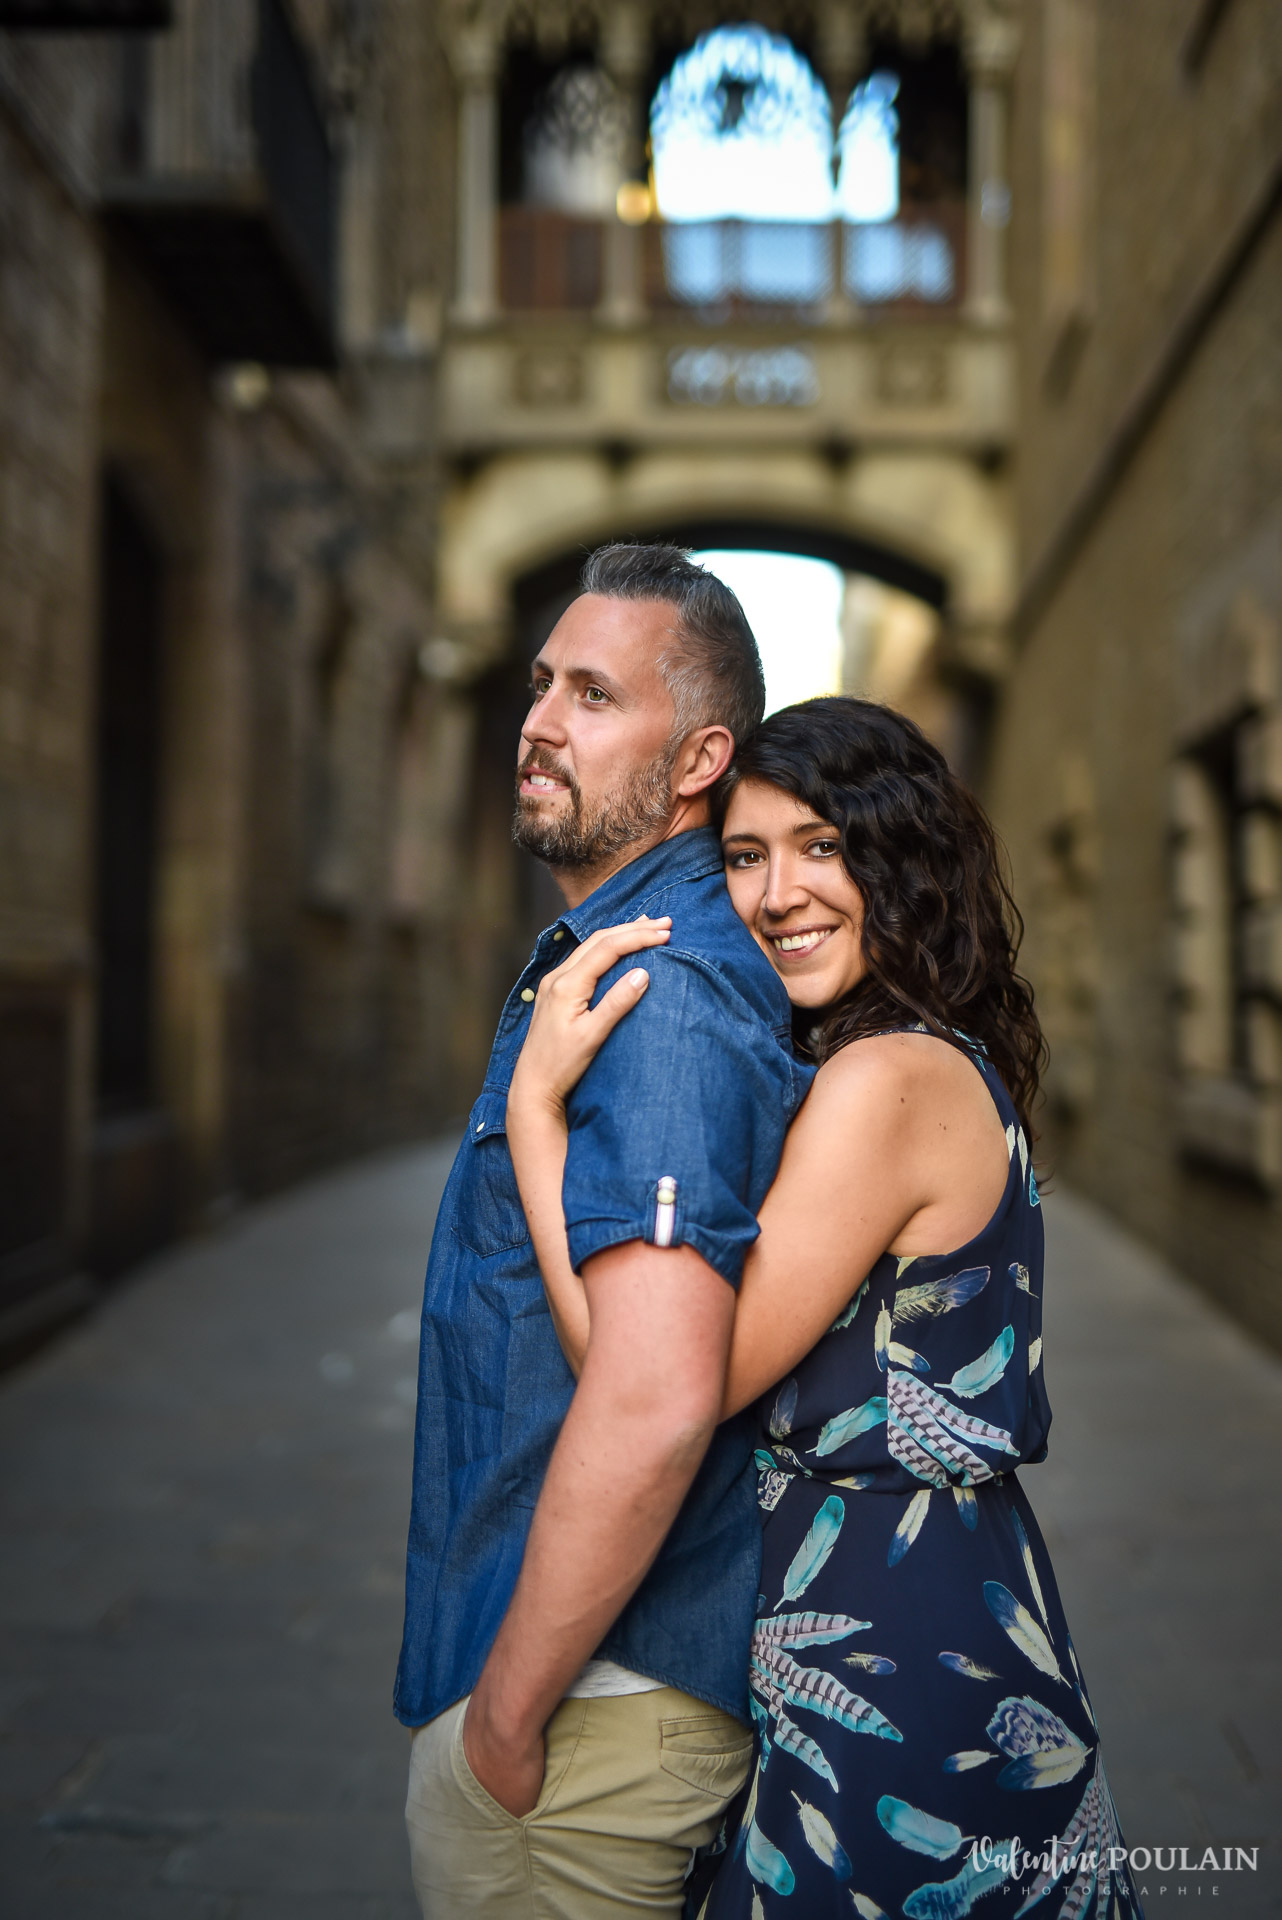 Séance photo couple Barcelone - Valentine Poulain quartier gothique